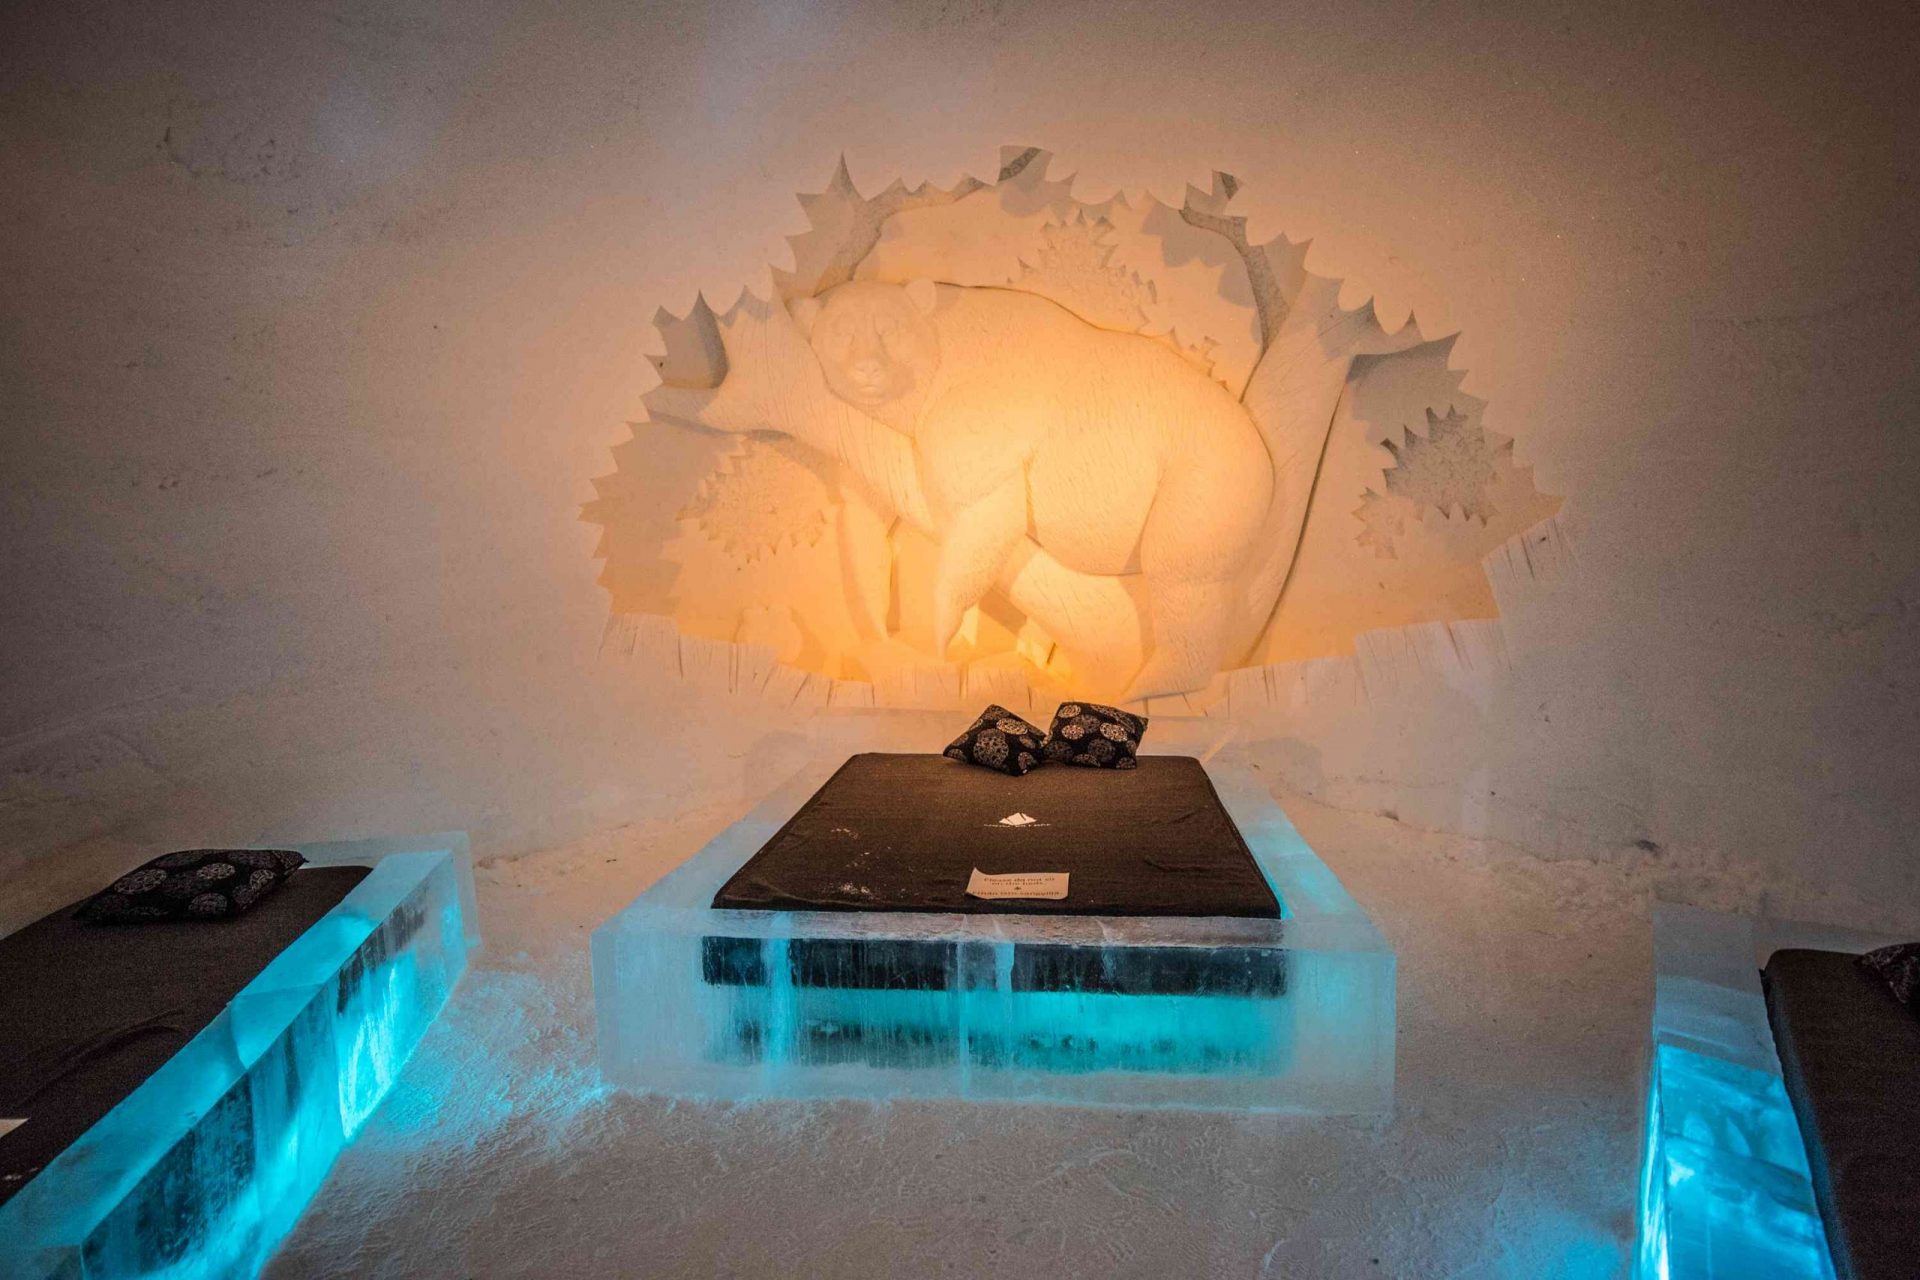 Hotel de nieve en Finlandia